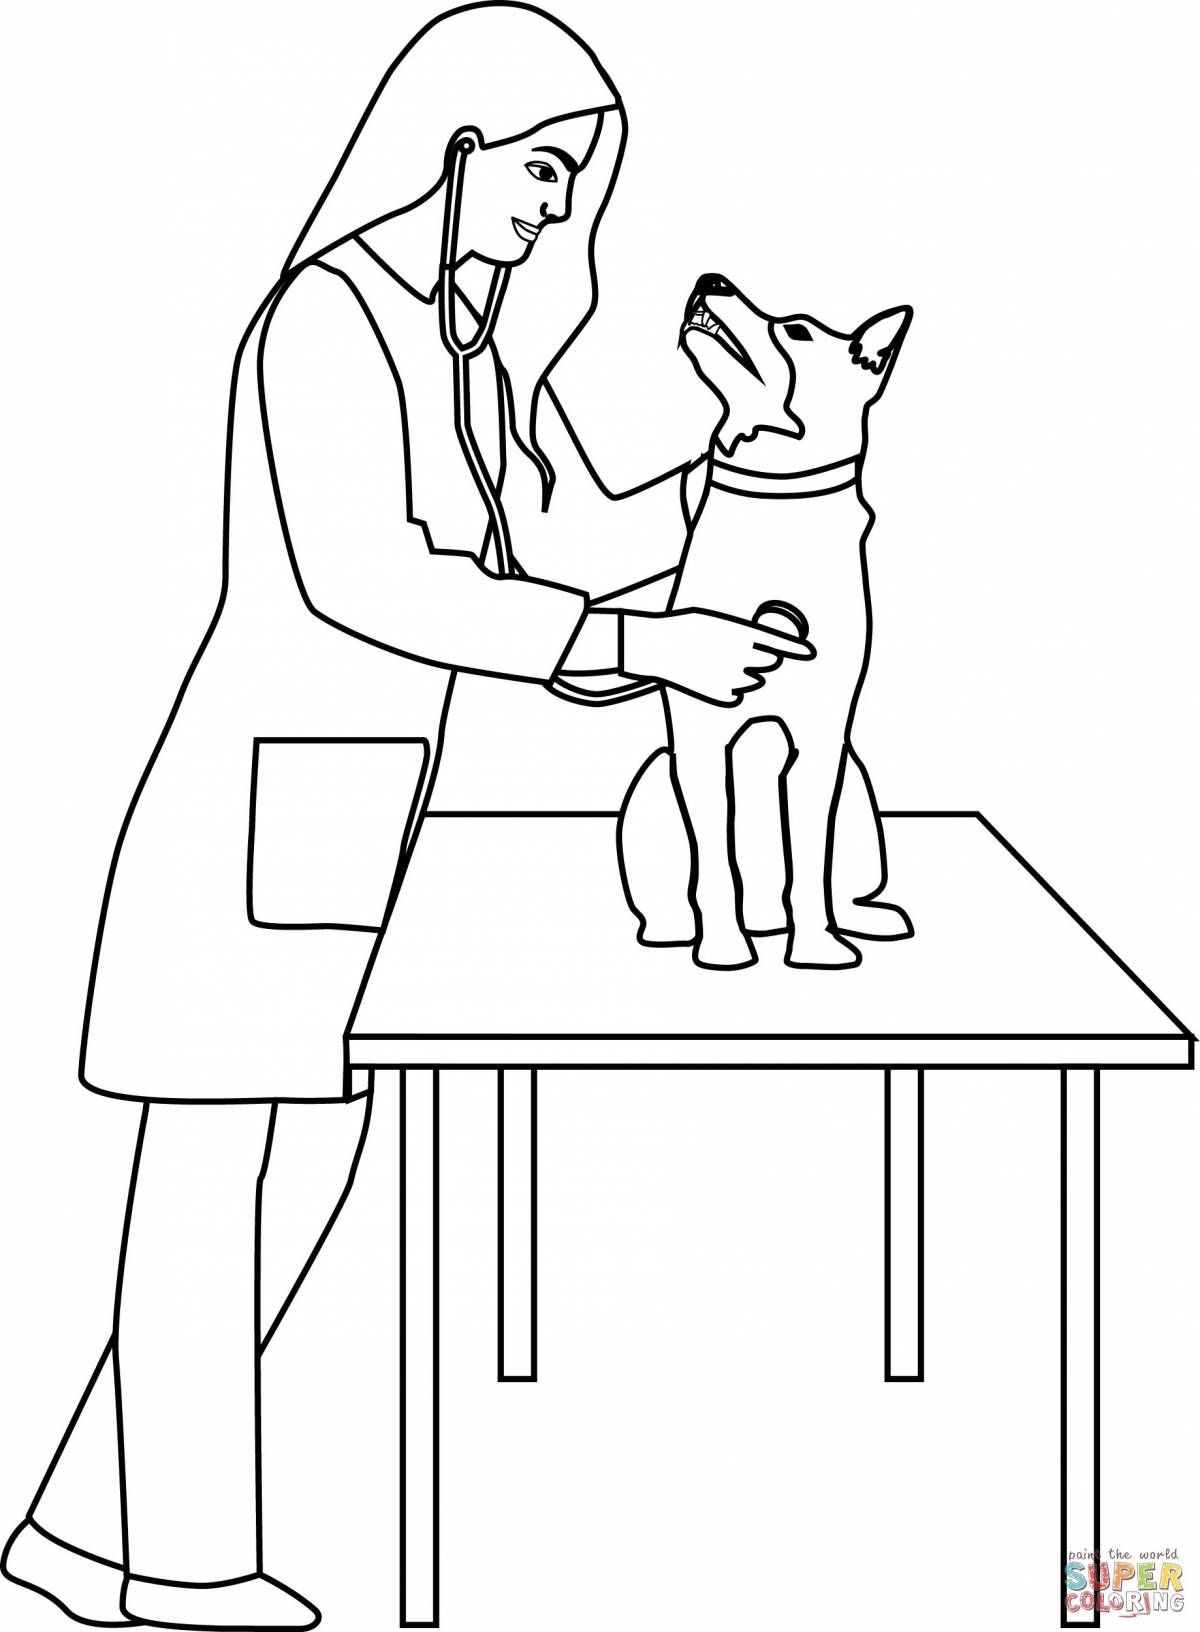 Рисунок ветеринара с животными